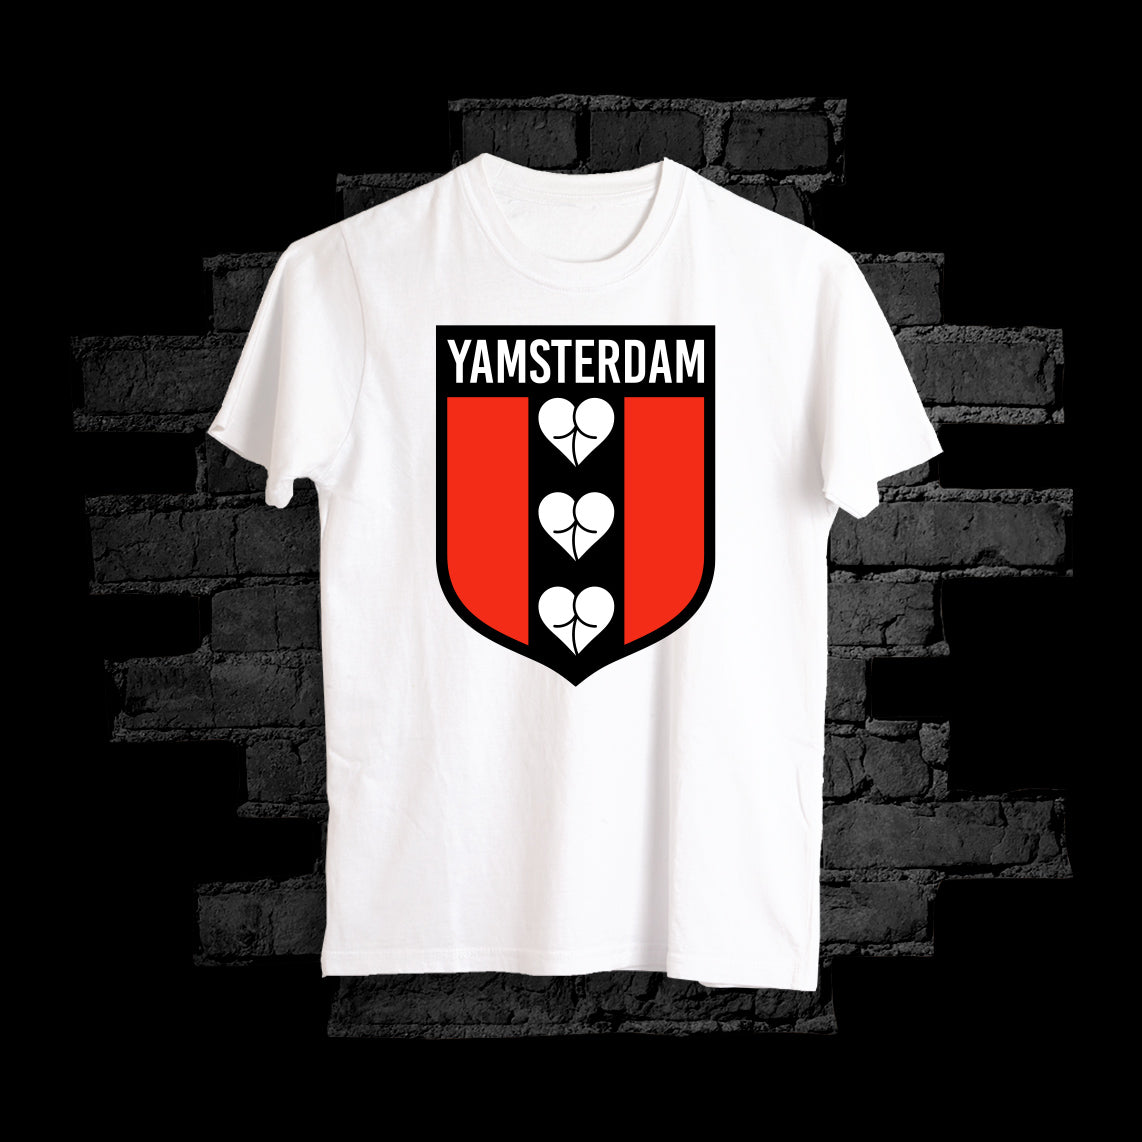 Yamsterdam Tee - White